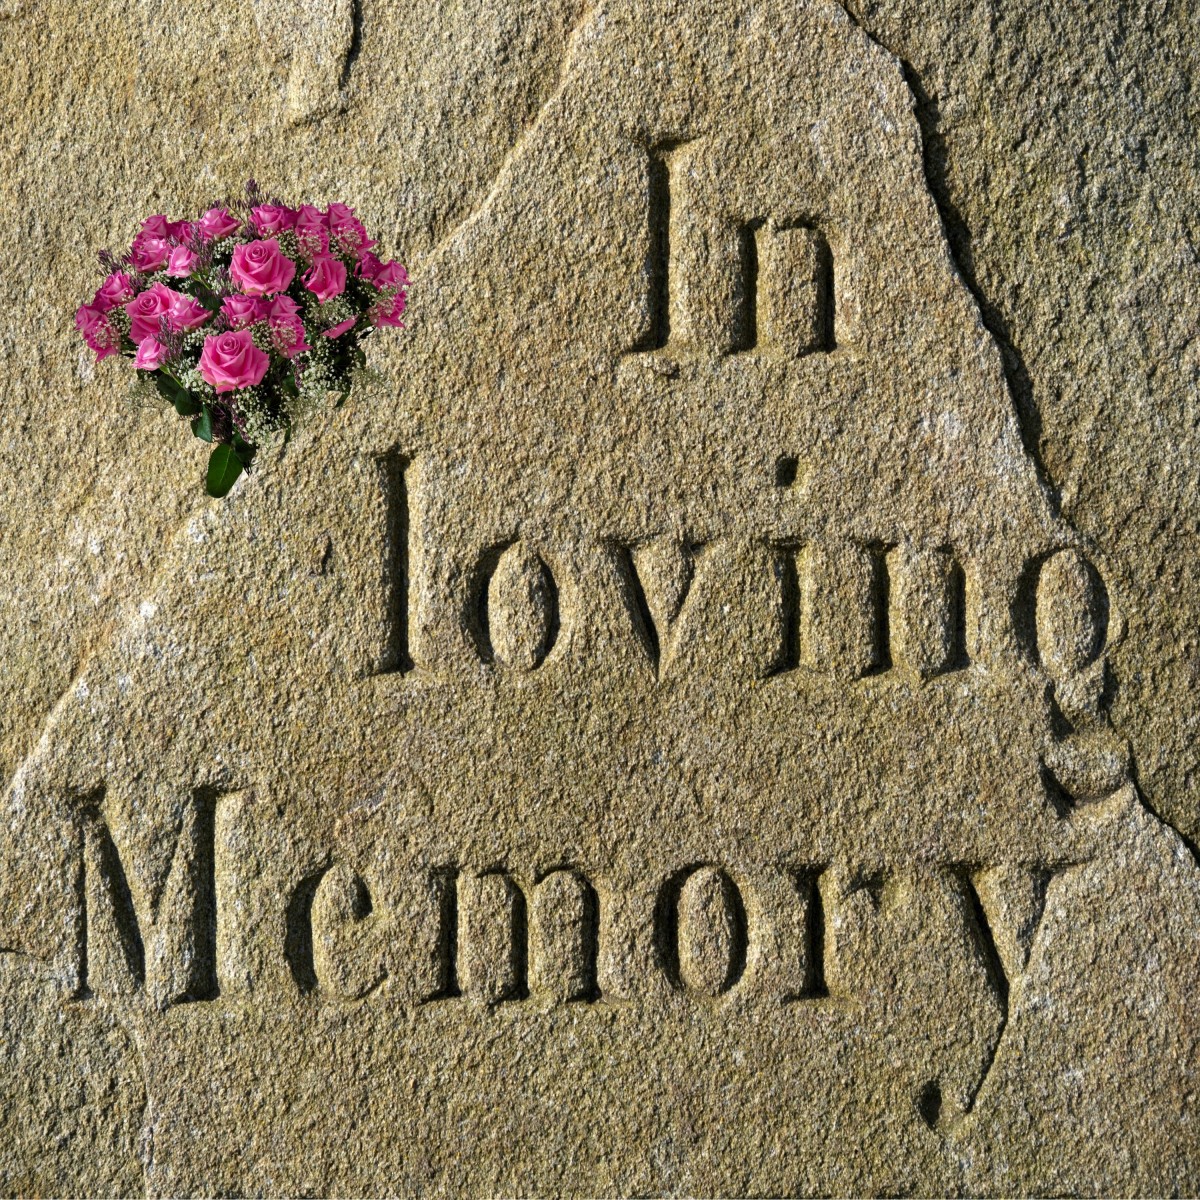 Personalised memorial stone